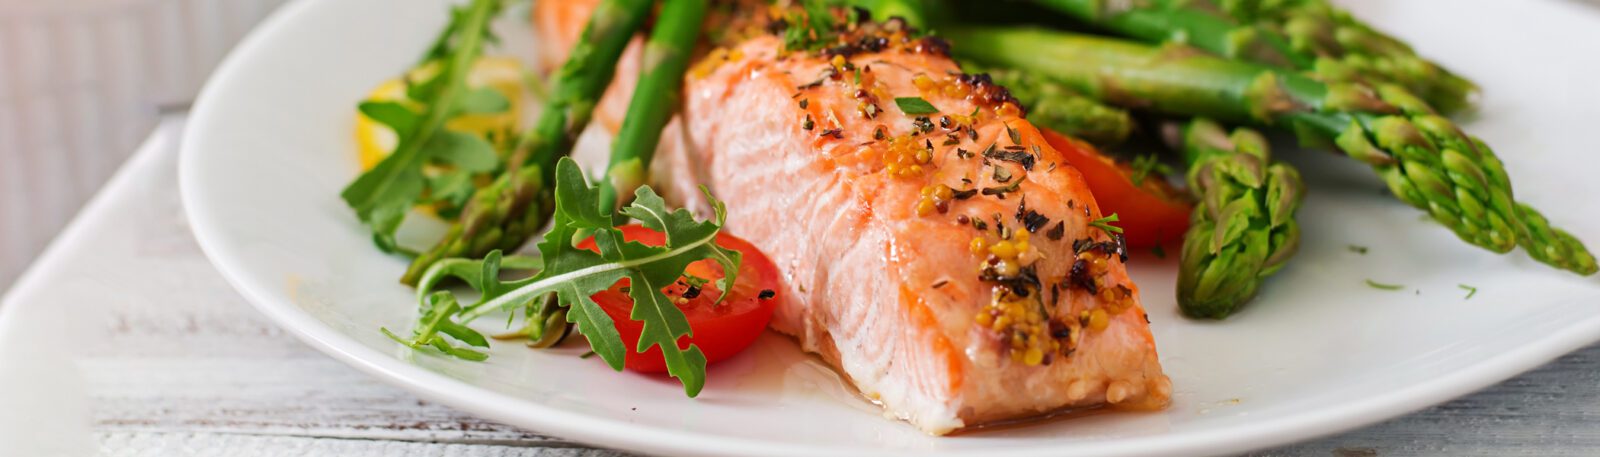 salmon and asparagus dinner plate